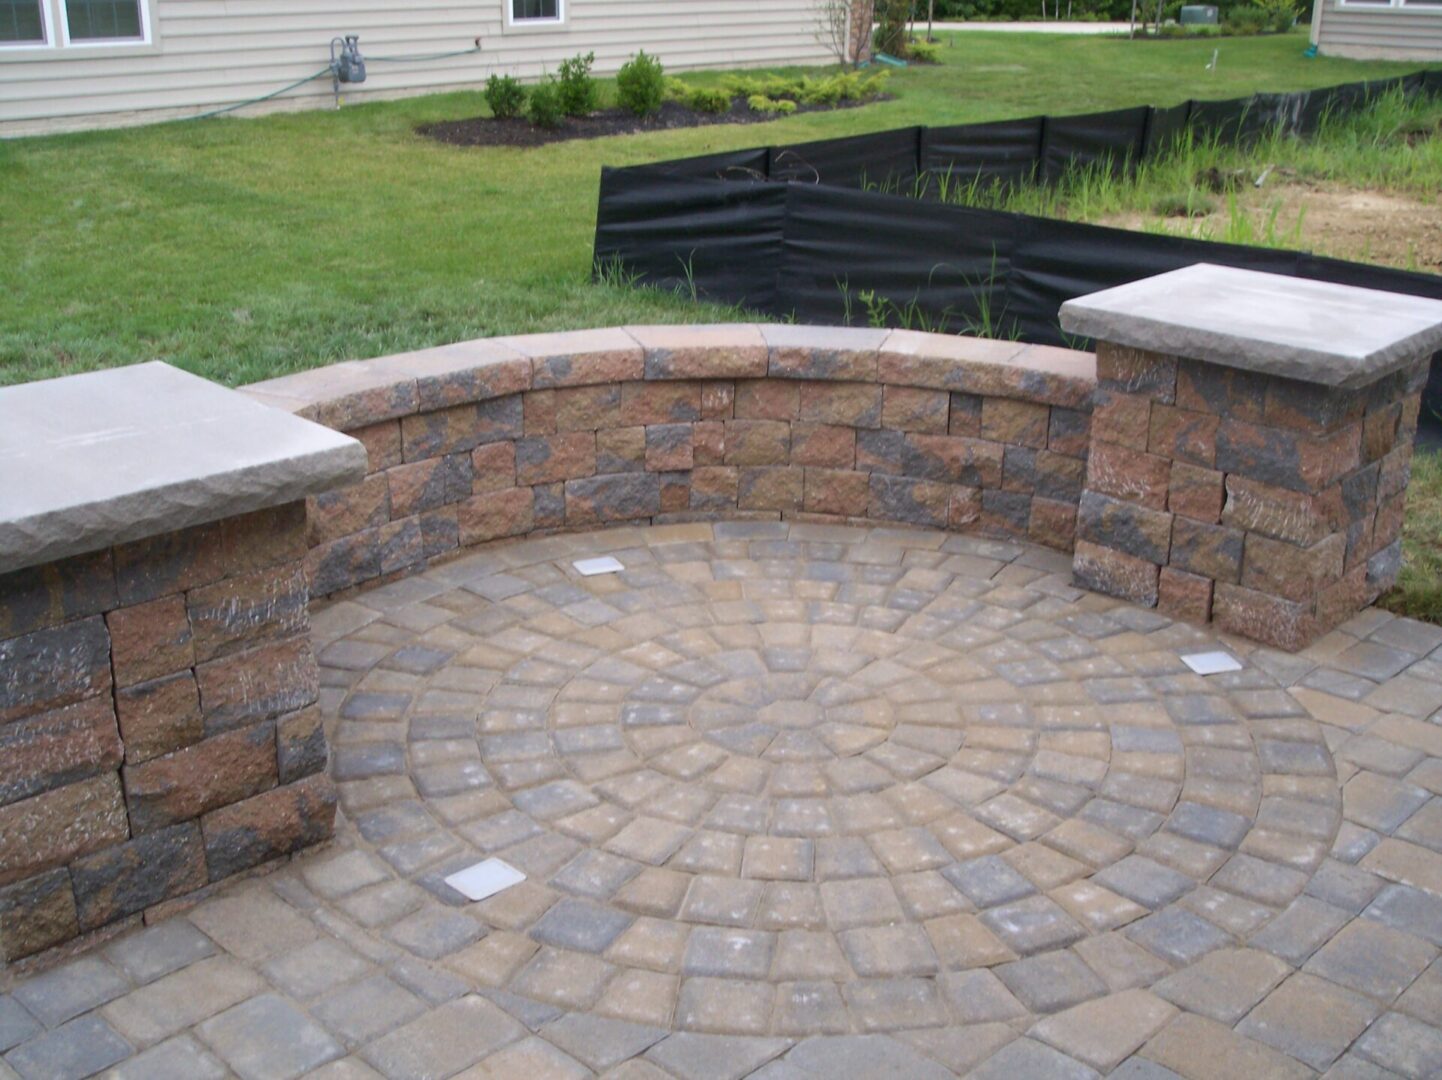 A stone deck with a circular design